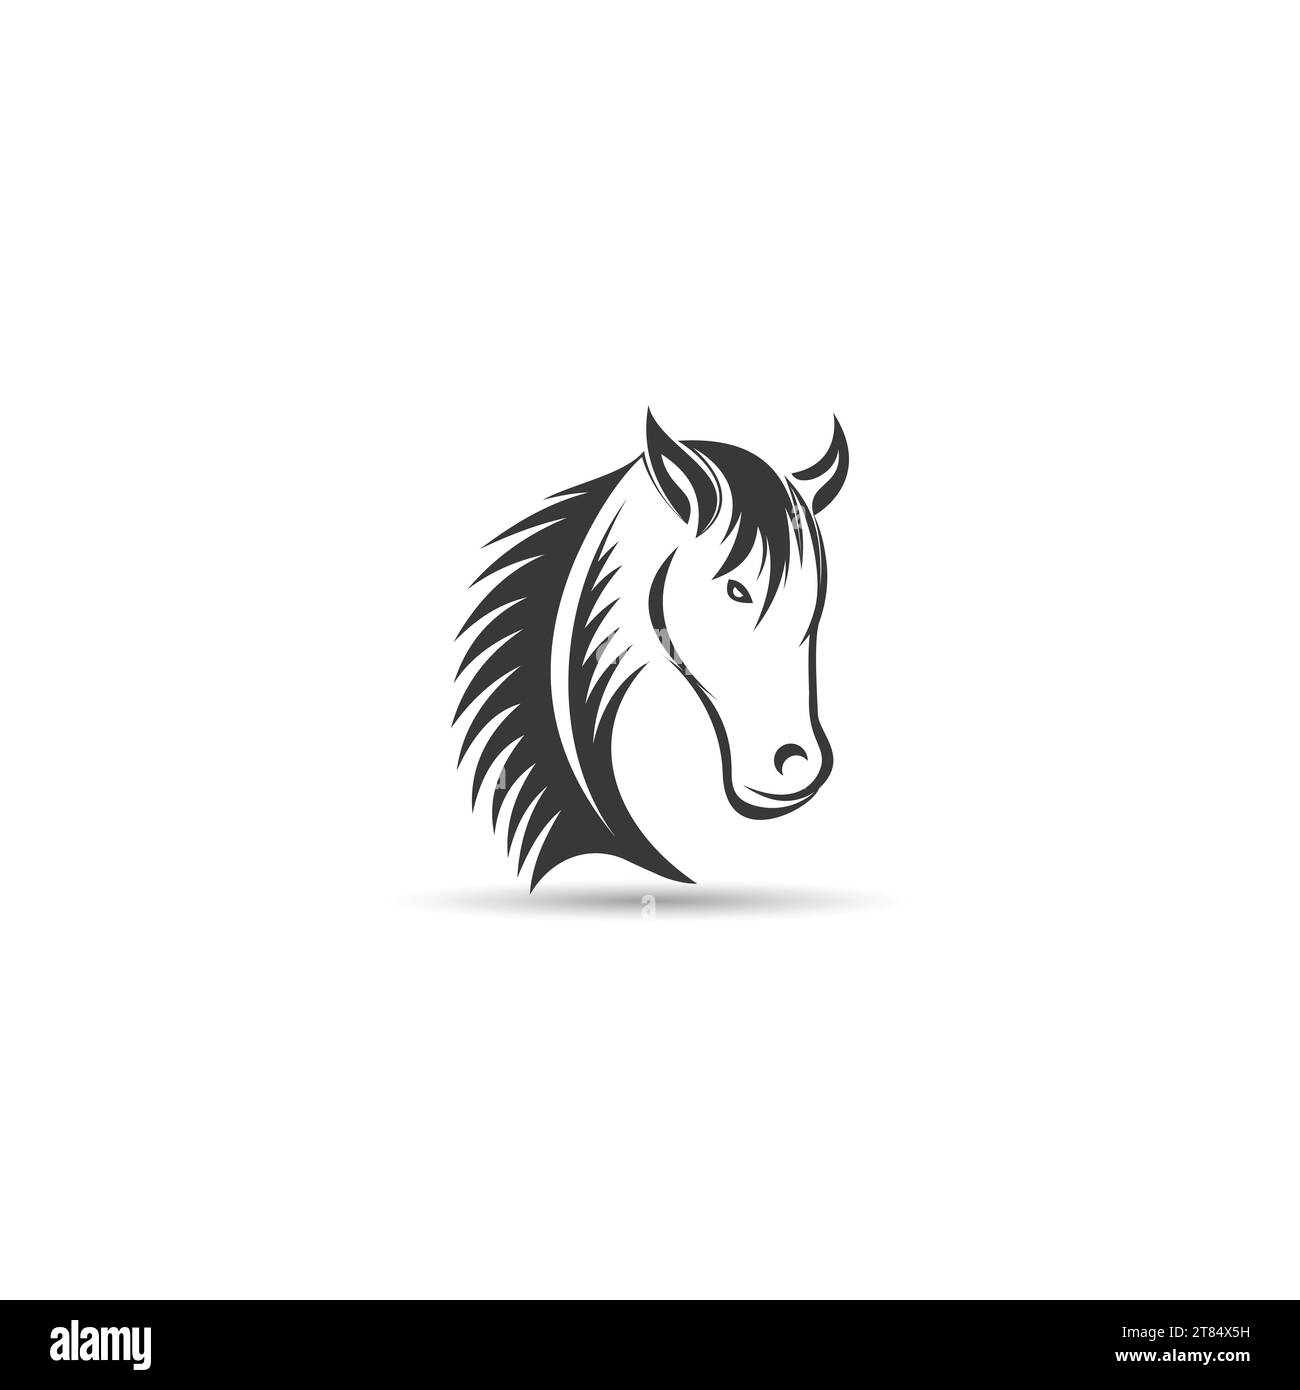 Vorlage für Vektordesign mit Tierhorse Logo Stock Vektor